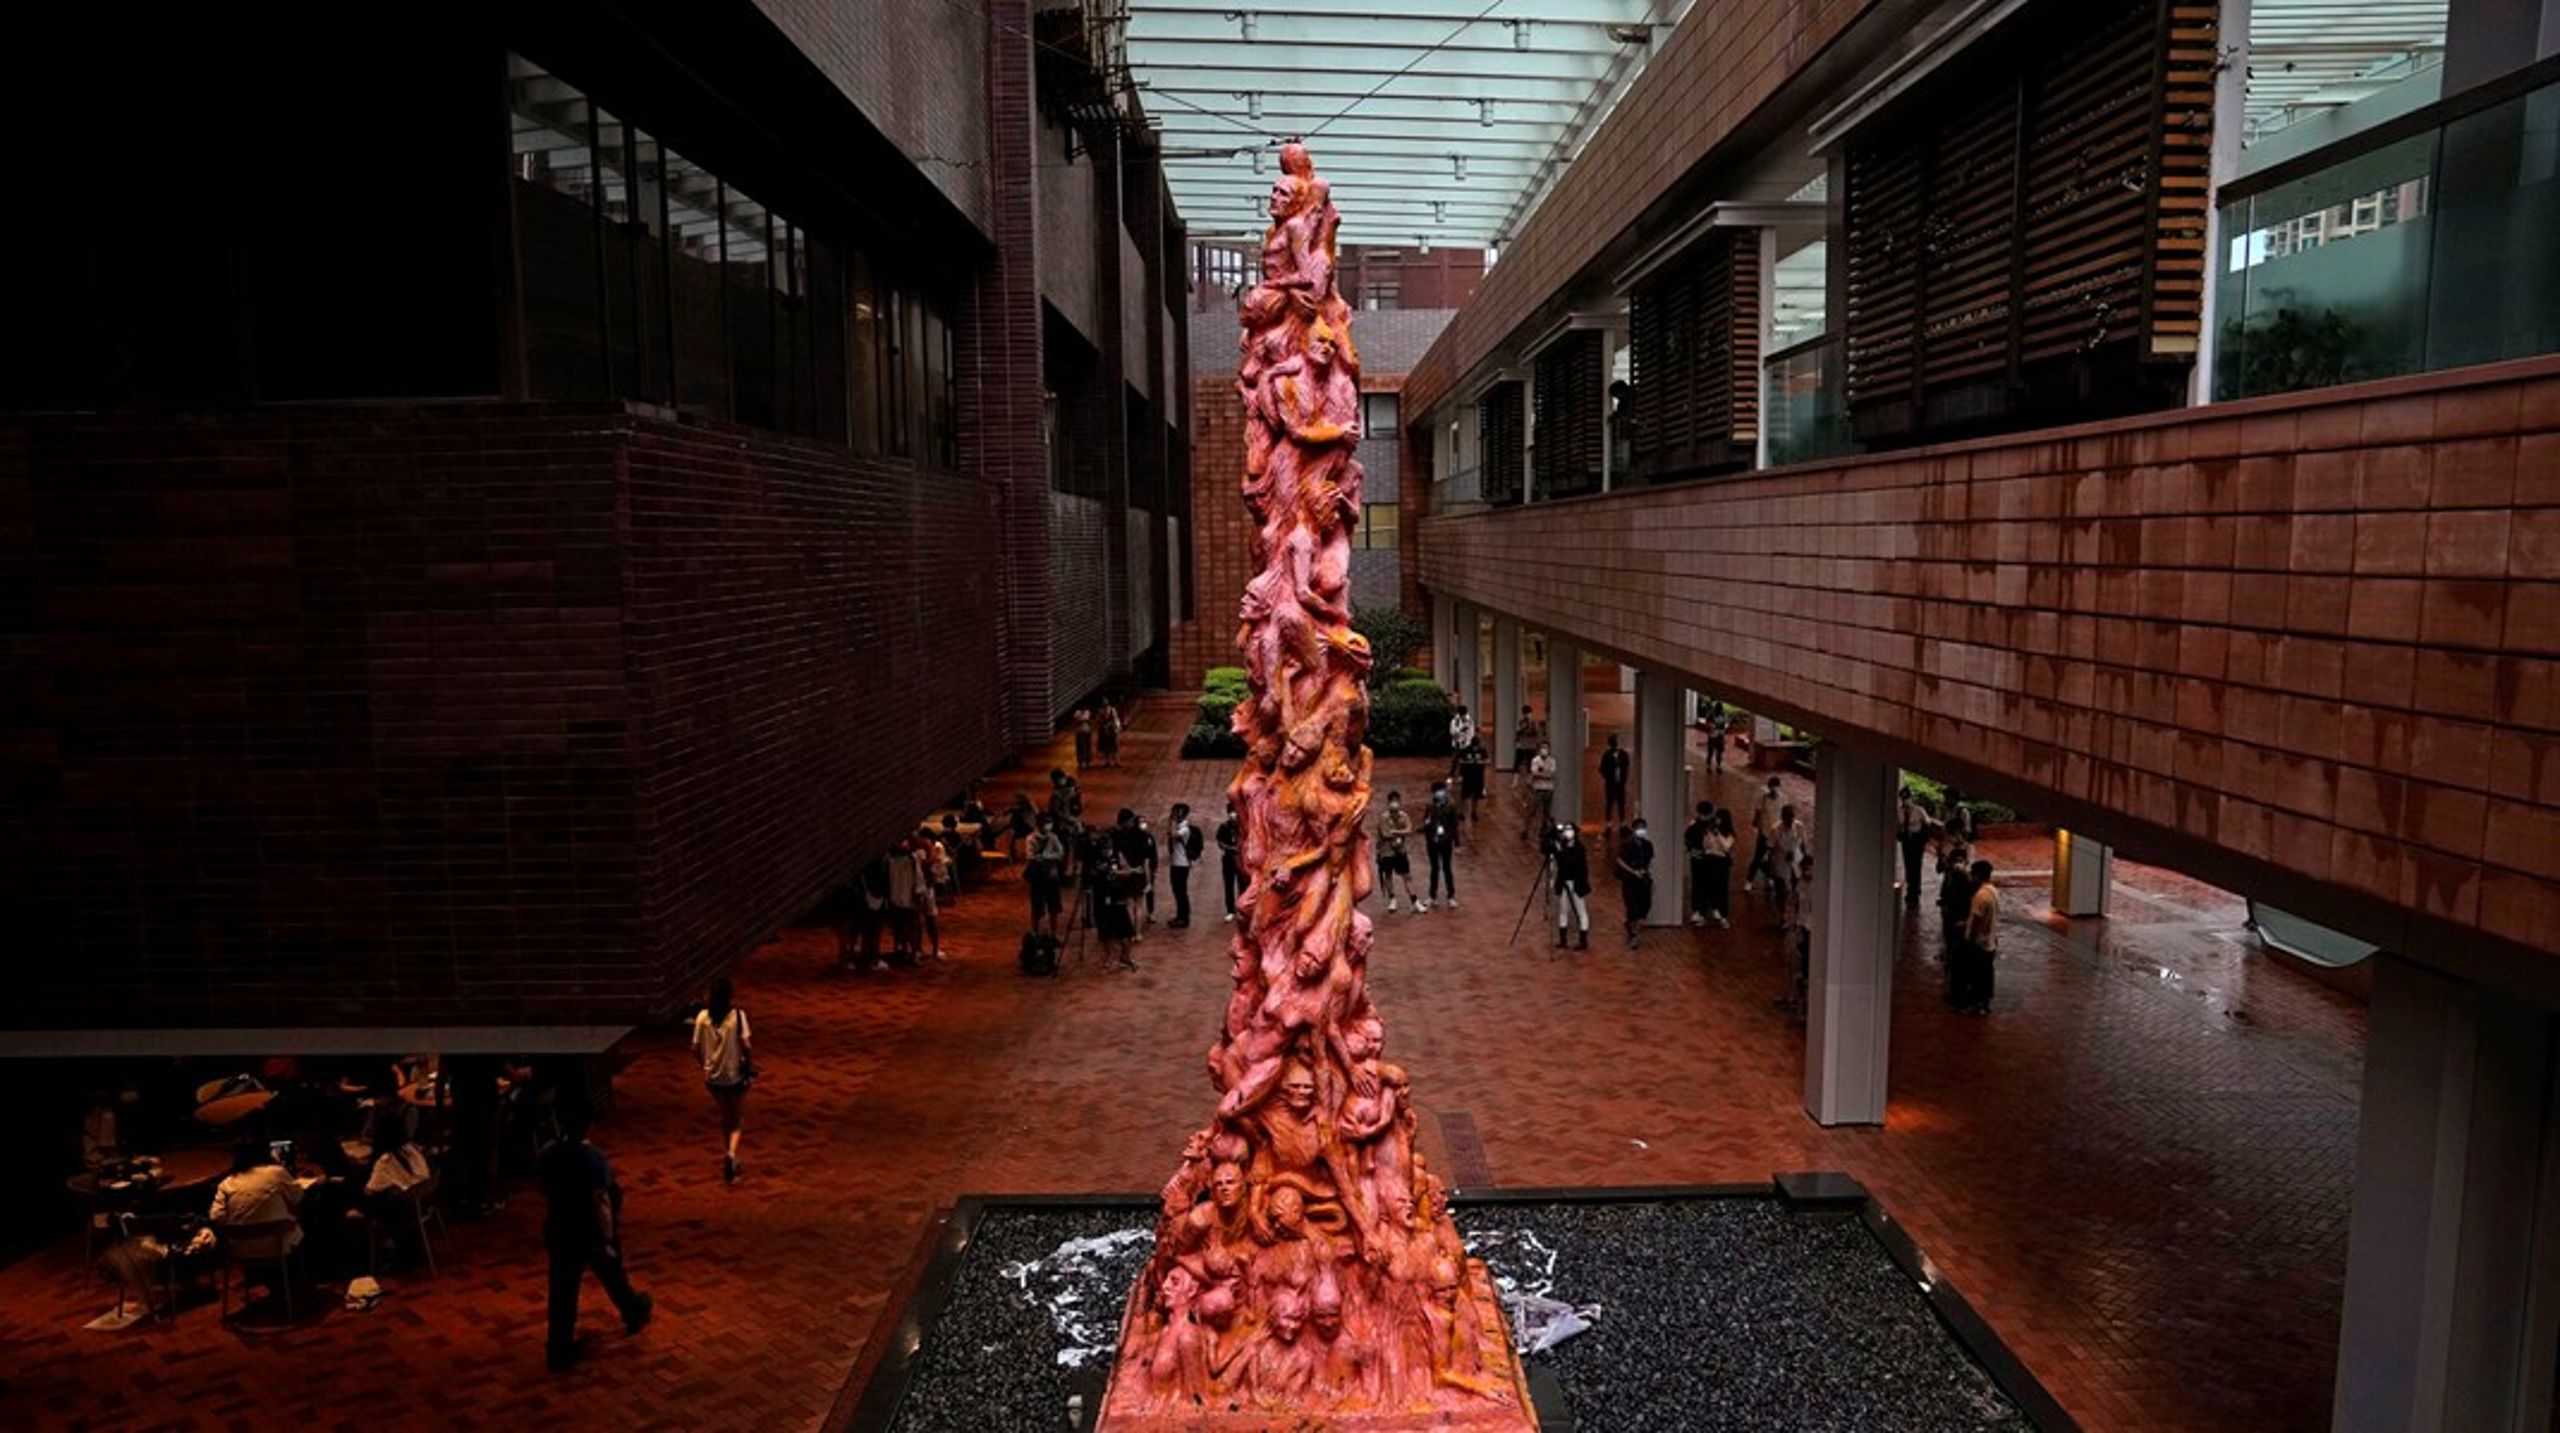 Den danske kæmpeskulptur "The Pillar of shame" er symbolet på den ytringsfrihed, som Hongkong efter aftale havde ret til som det eneste sted under kinesisk territorium. Men åbenhed og frihed er blevet til bitterhed og fængslinger, skriver Jens Galschiøt og Kira Marie Peter-Hansen.